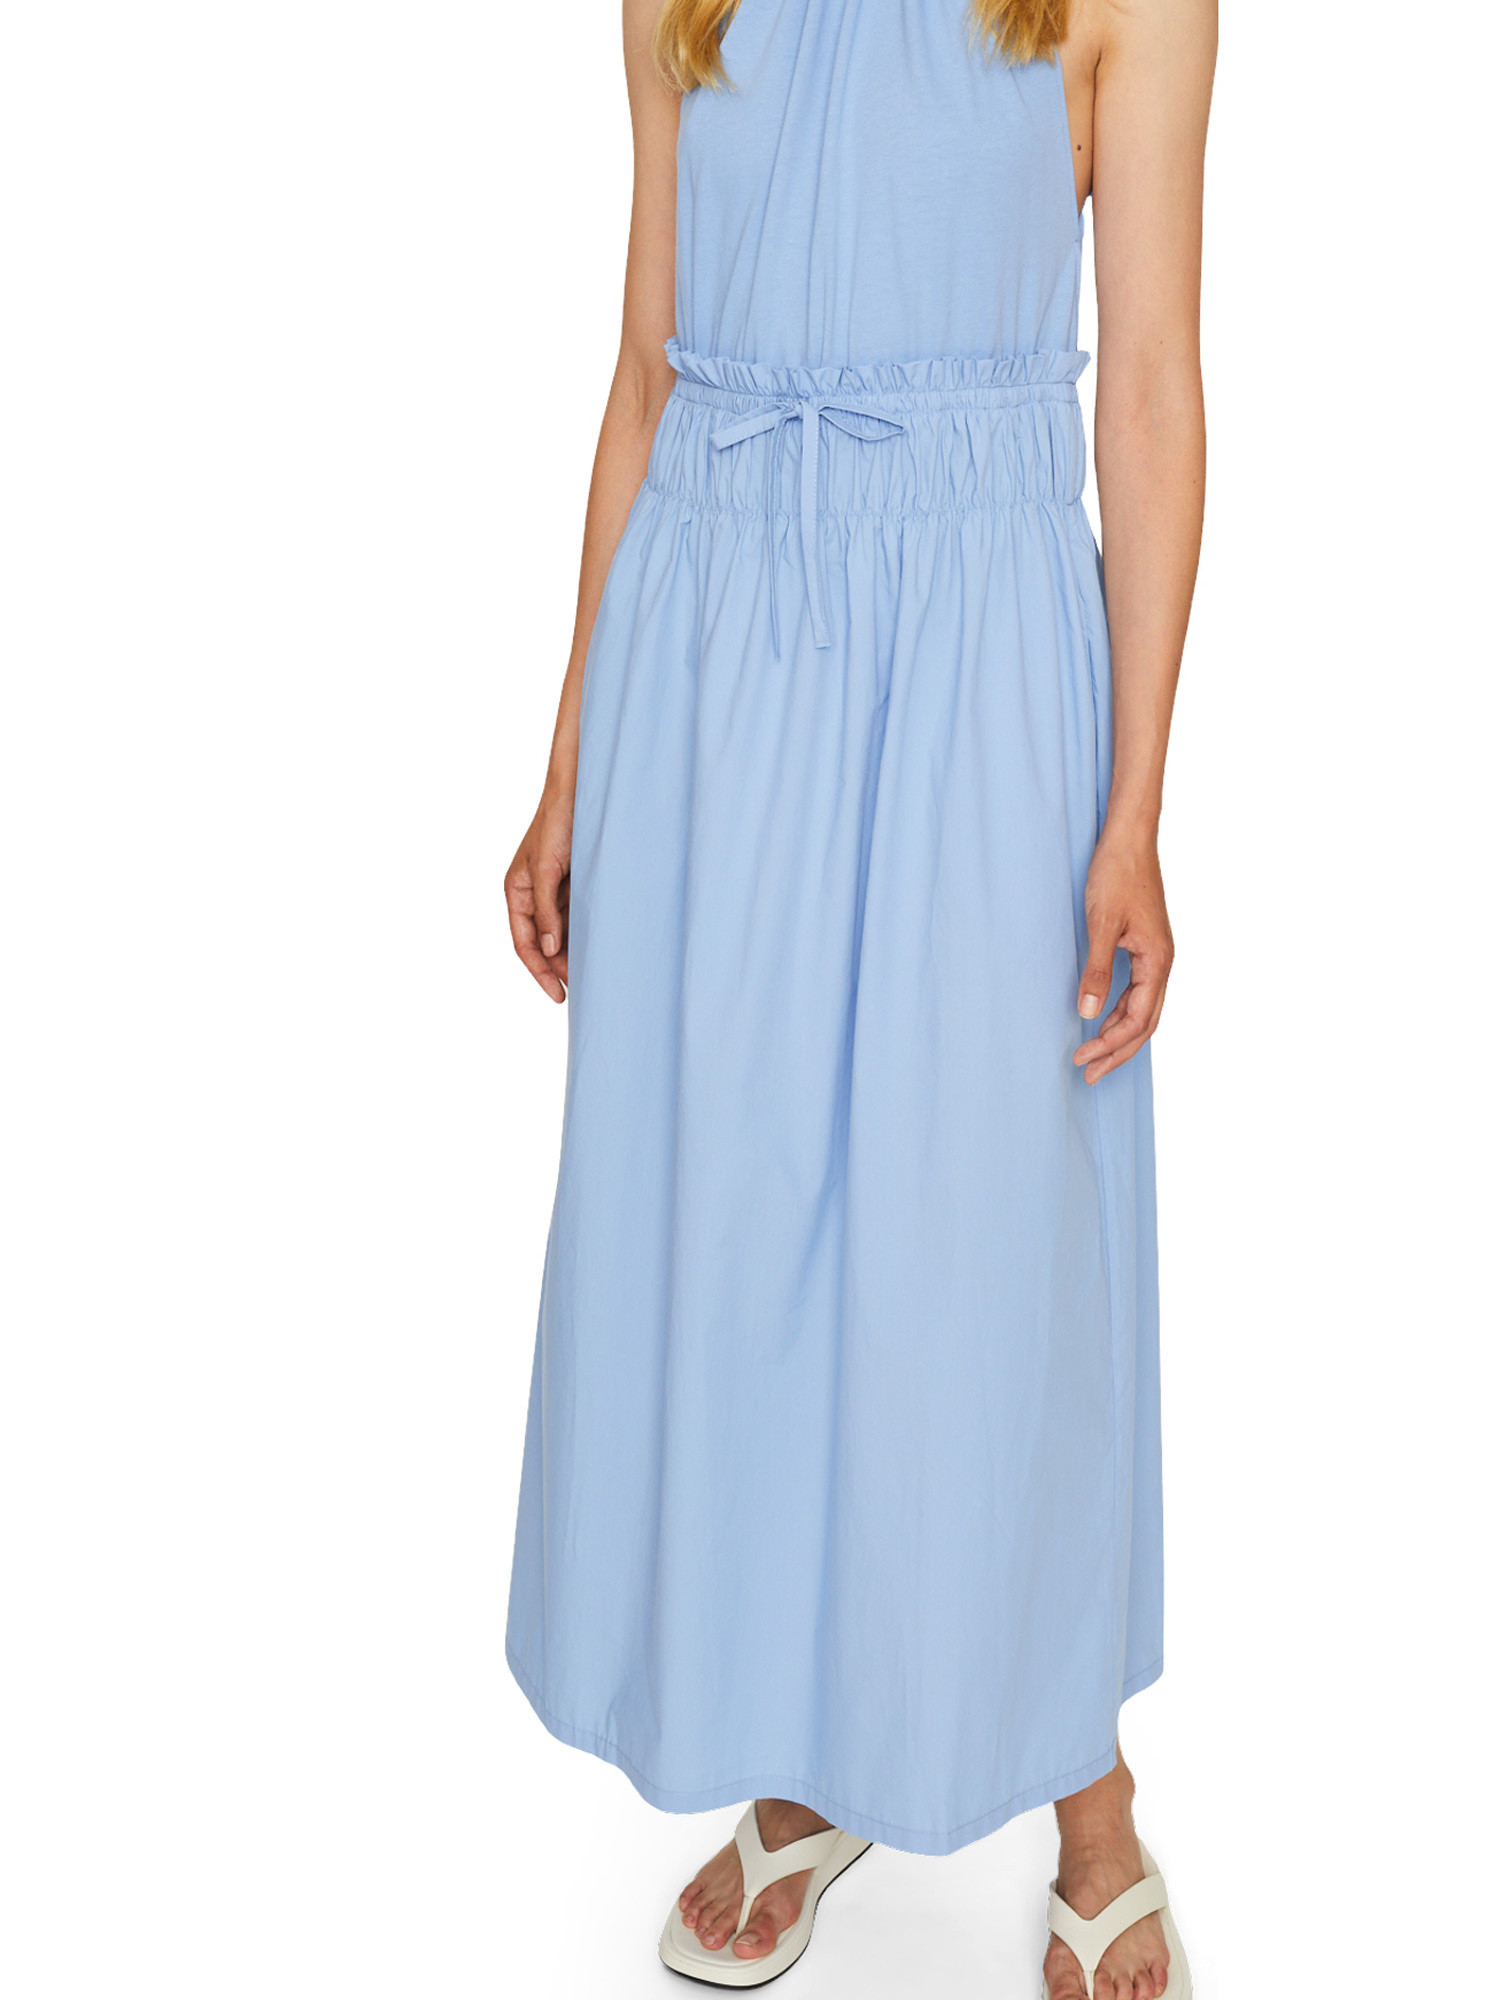 Dress, Light Blue, large image number 5